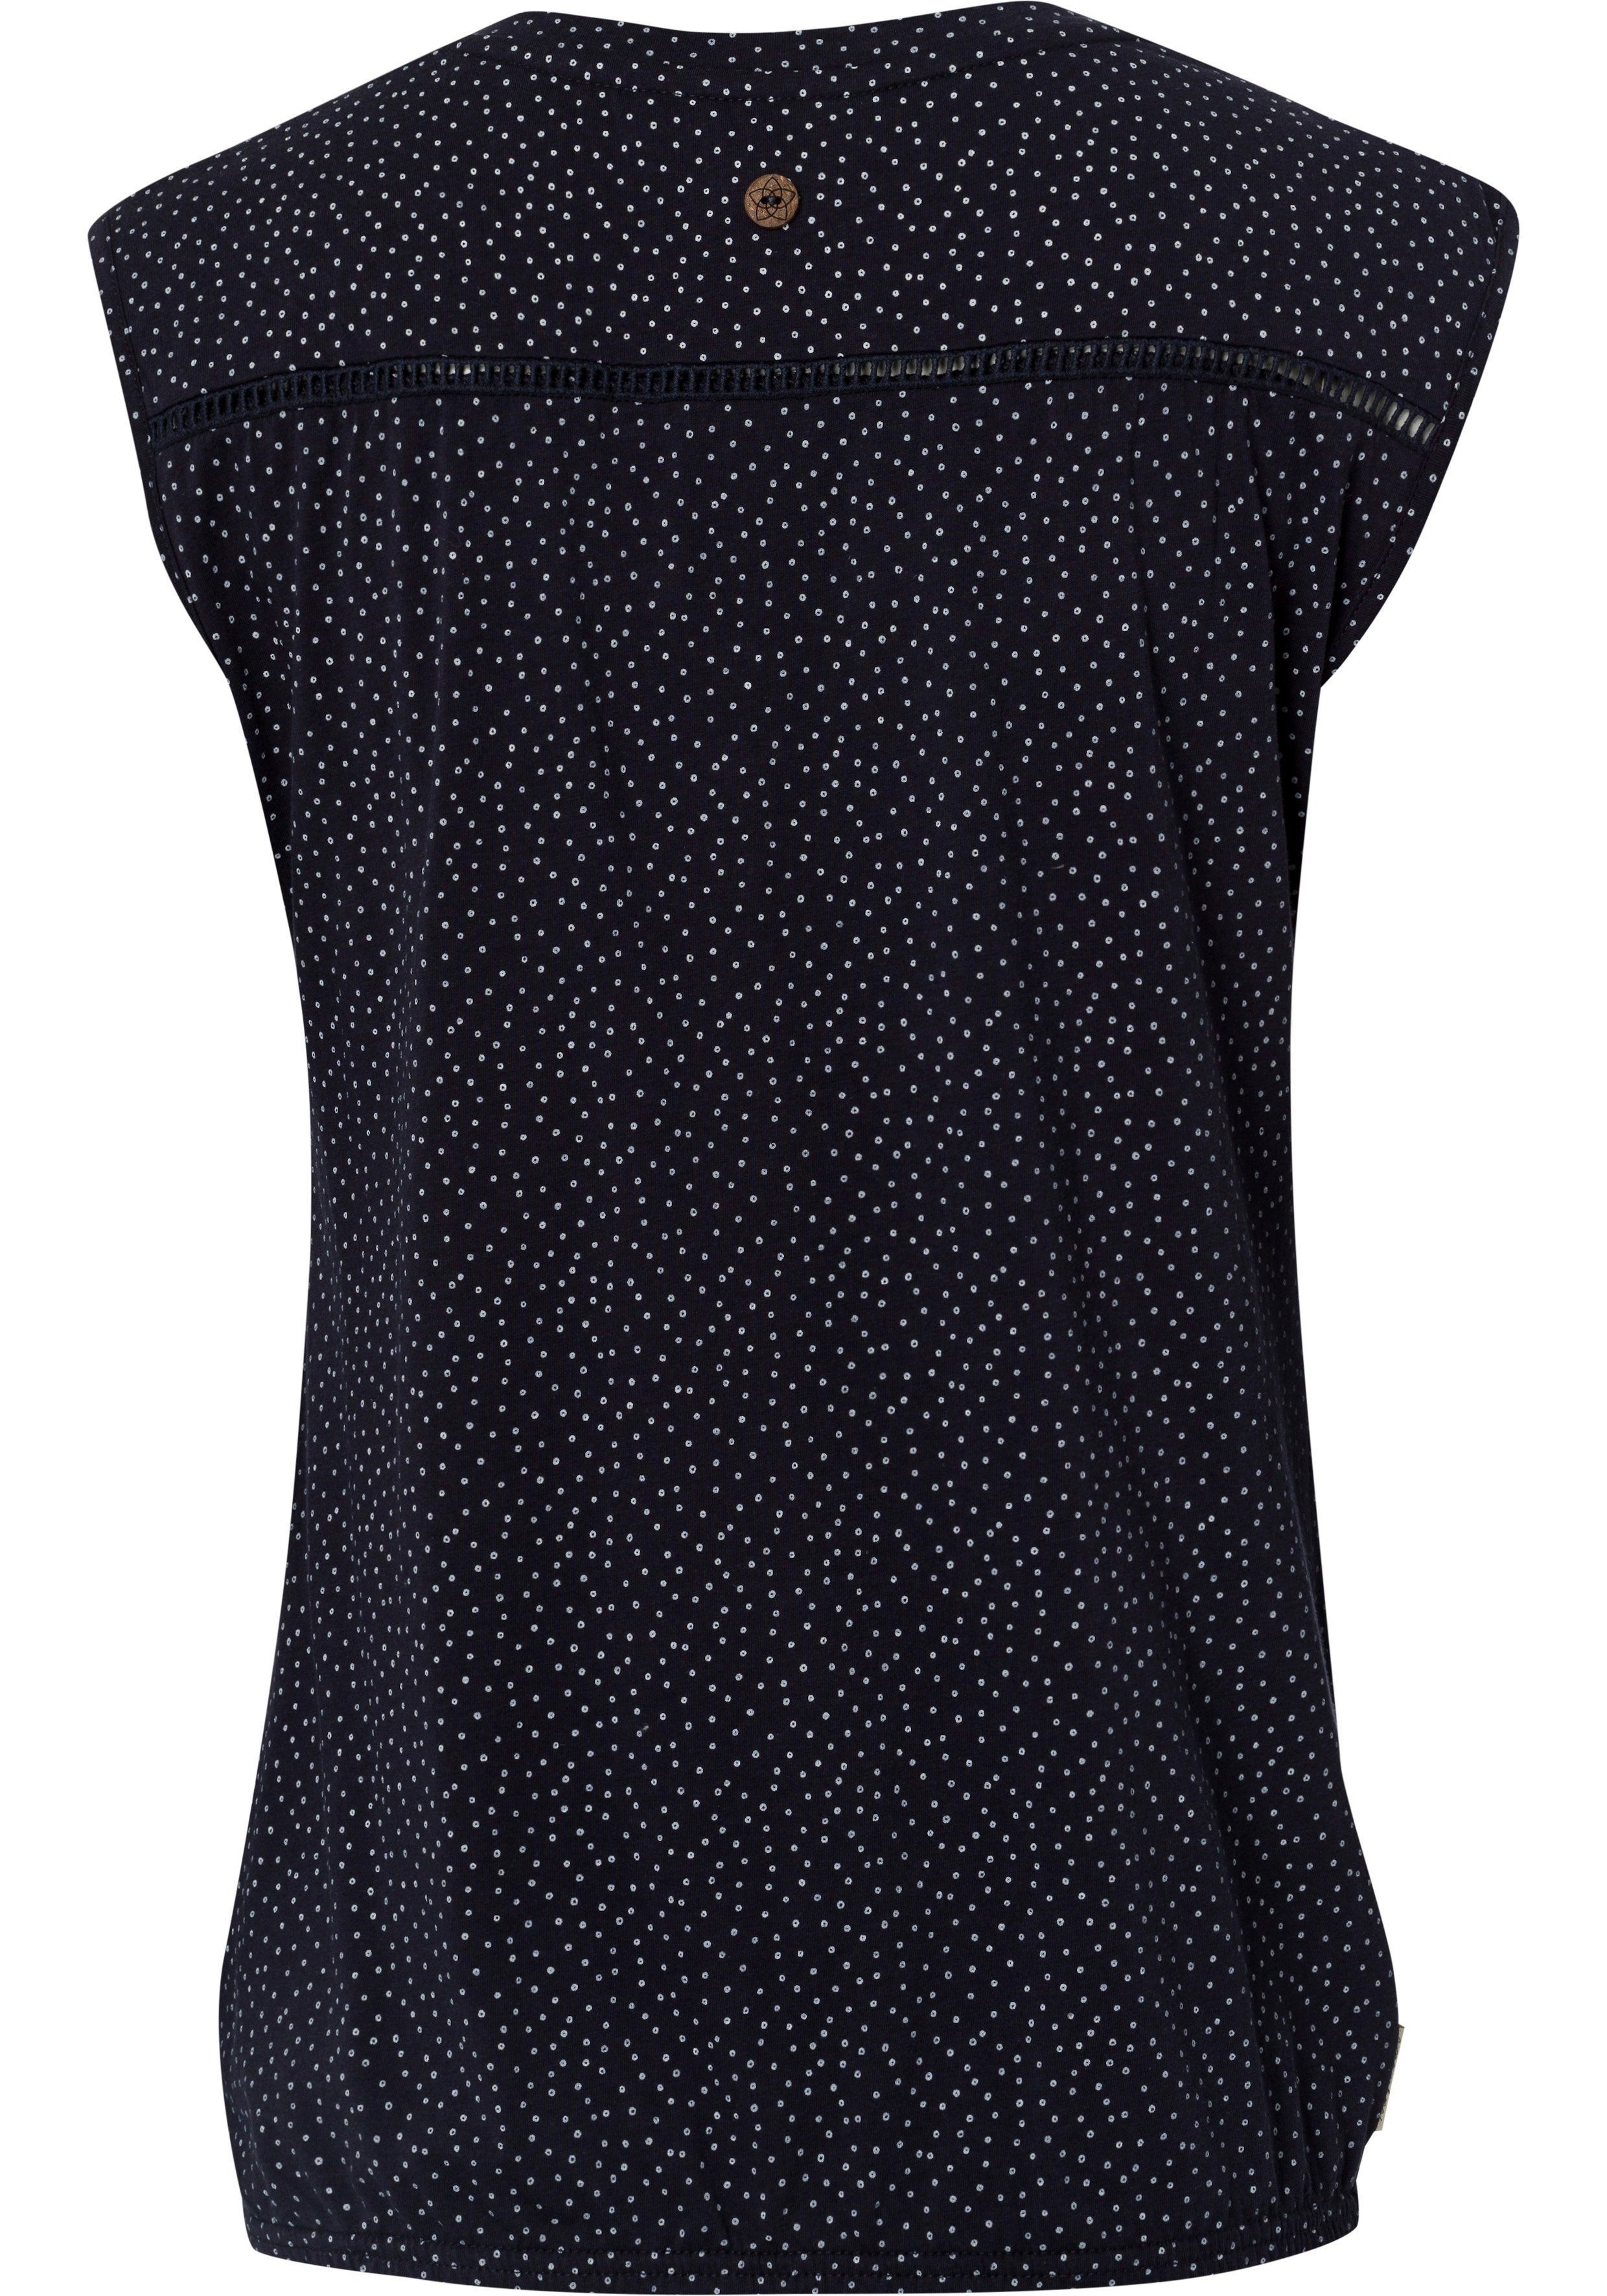 Ragwear Blusenshirt SALTY PRINT ORGANIC mit Zierknopfleiste, Aus leicht  glänzender Viscose, fair hergestellt